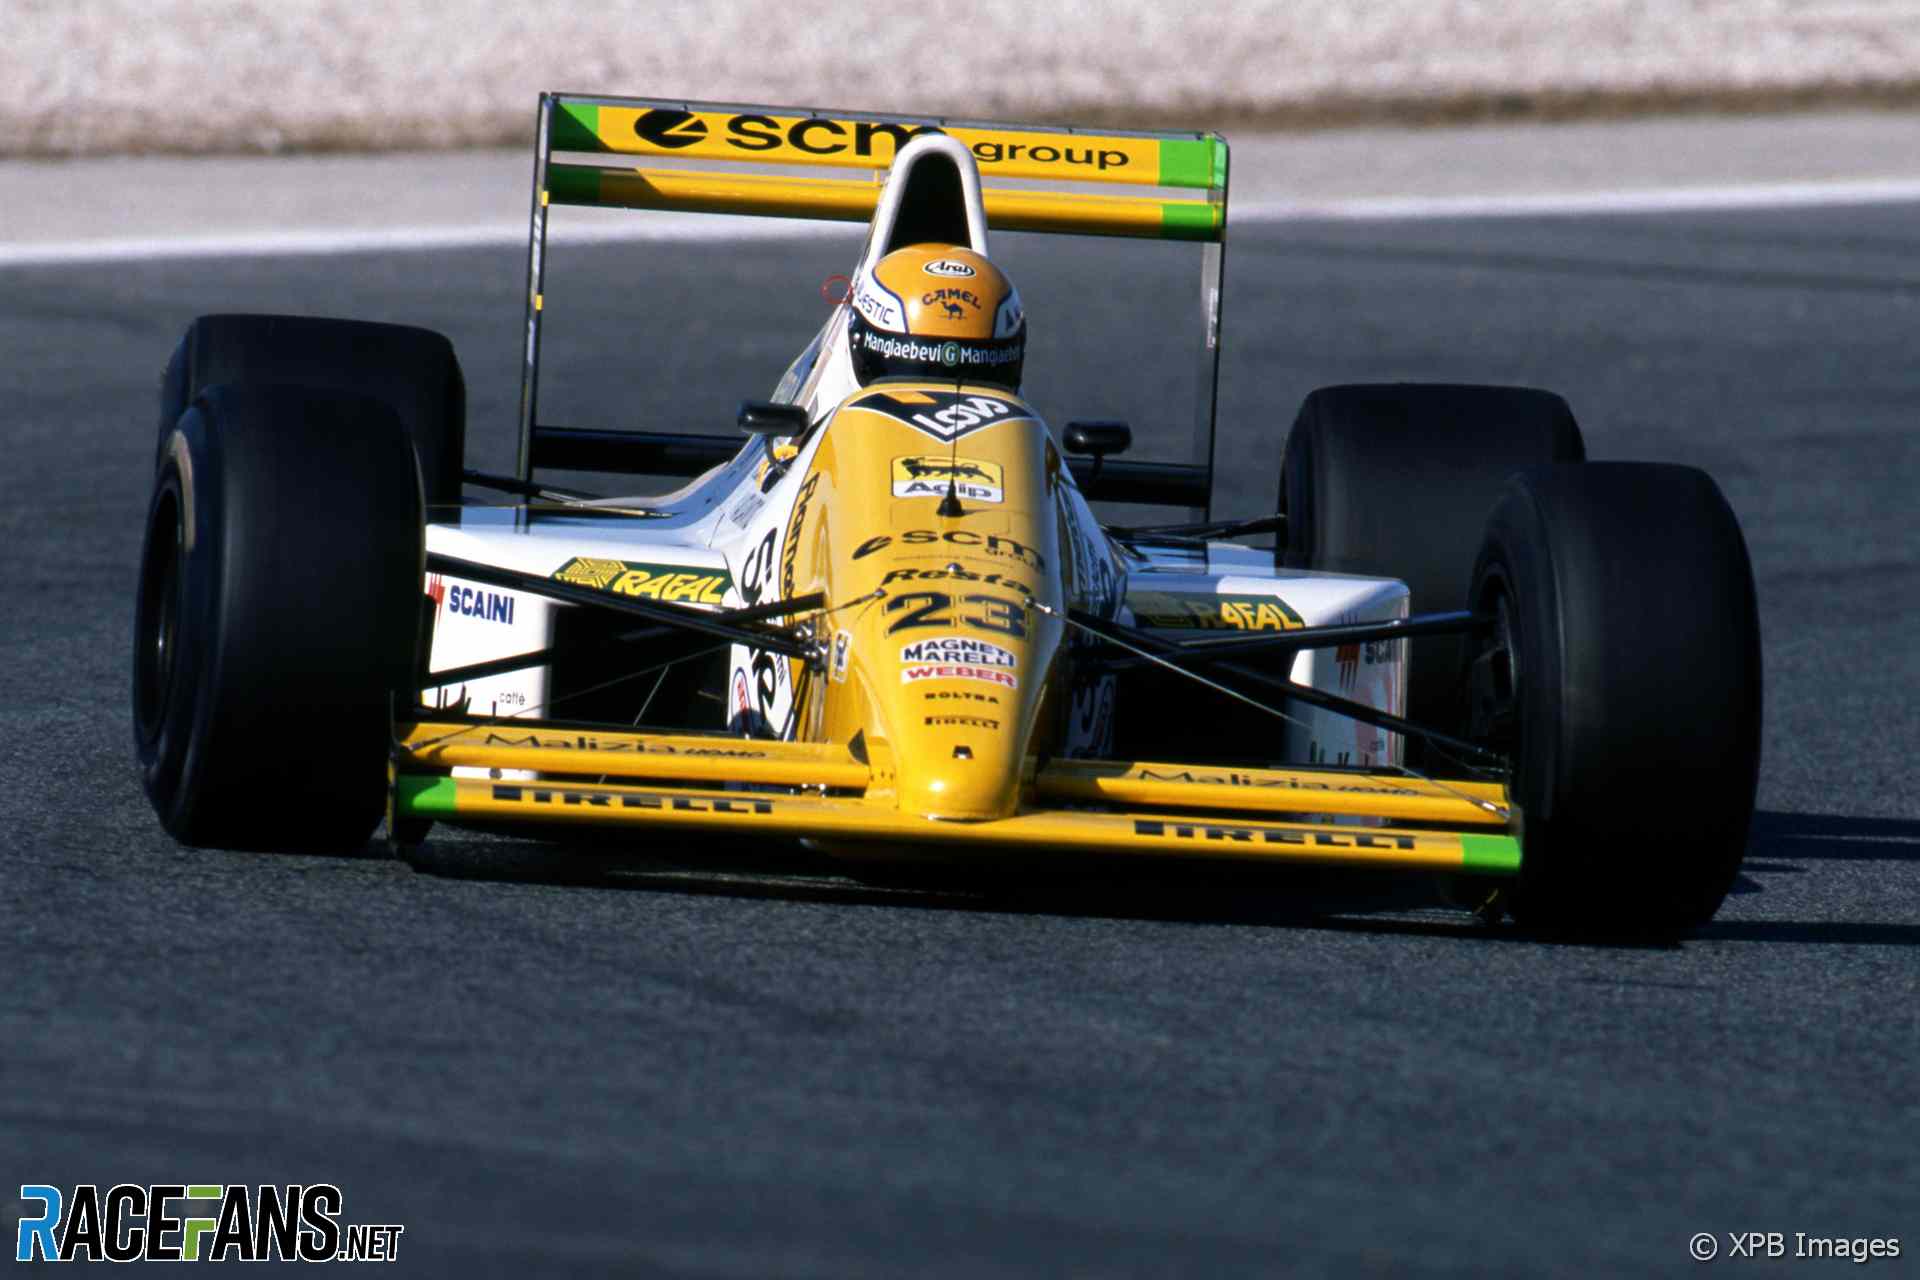 Pierluigi Martini, Minardi, Estoril, 1989